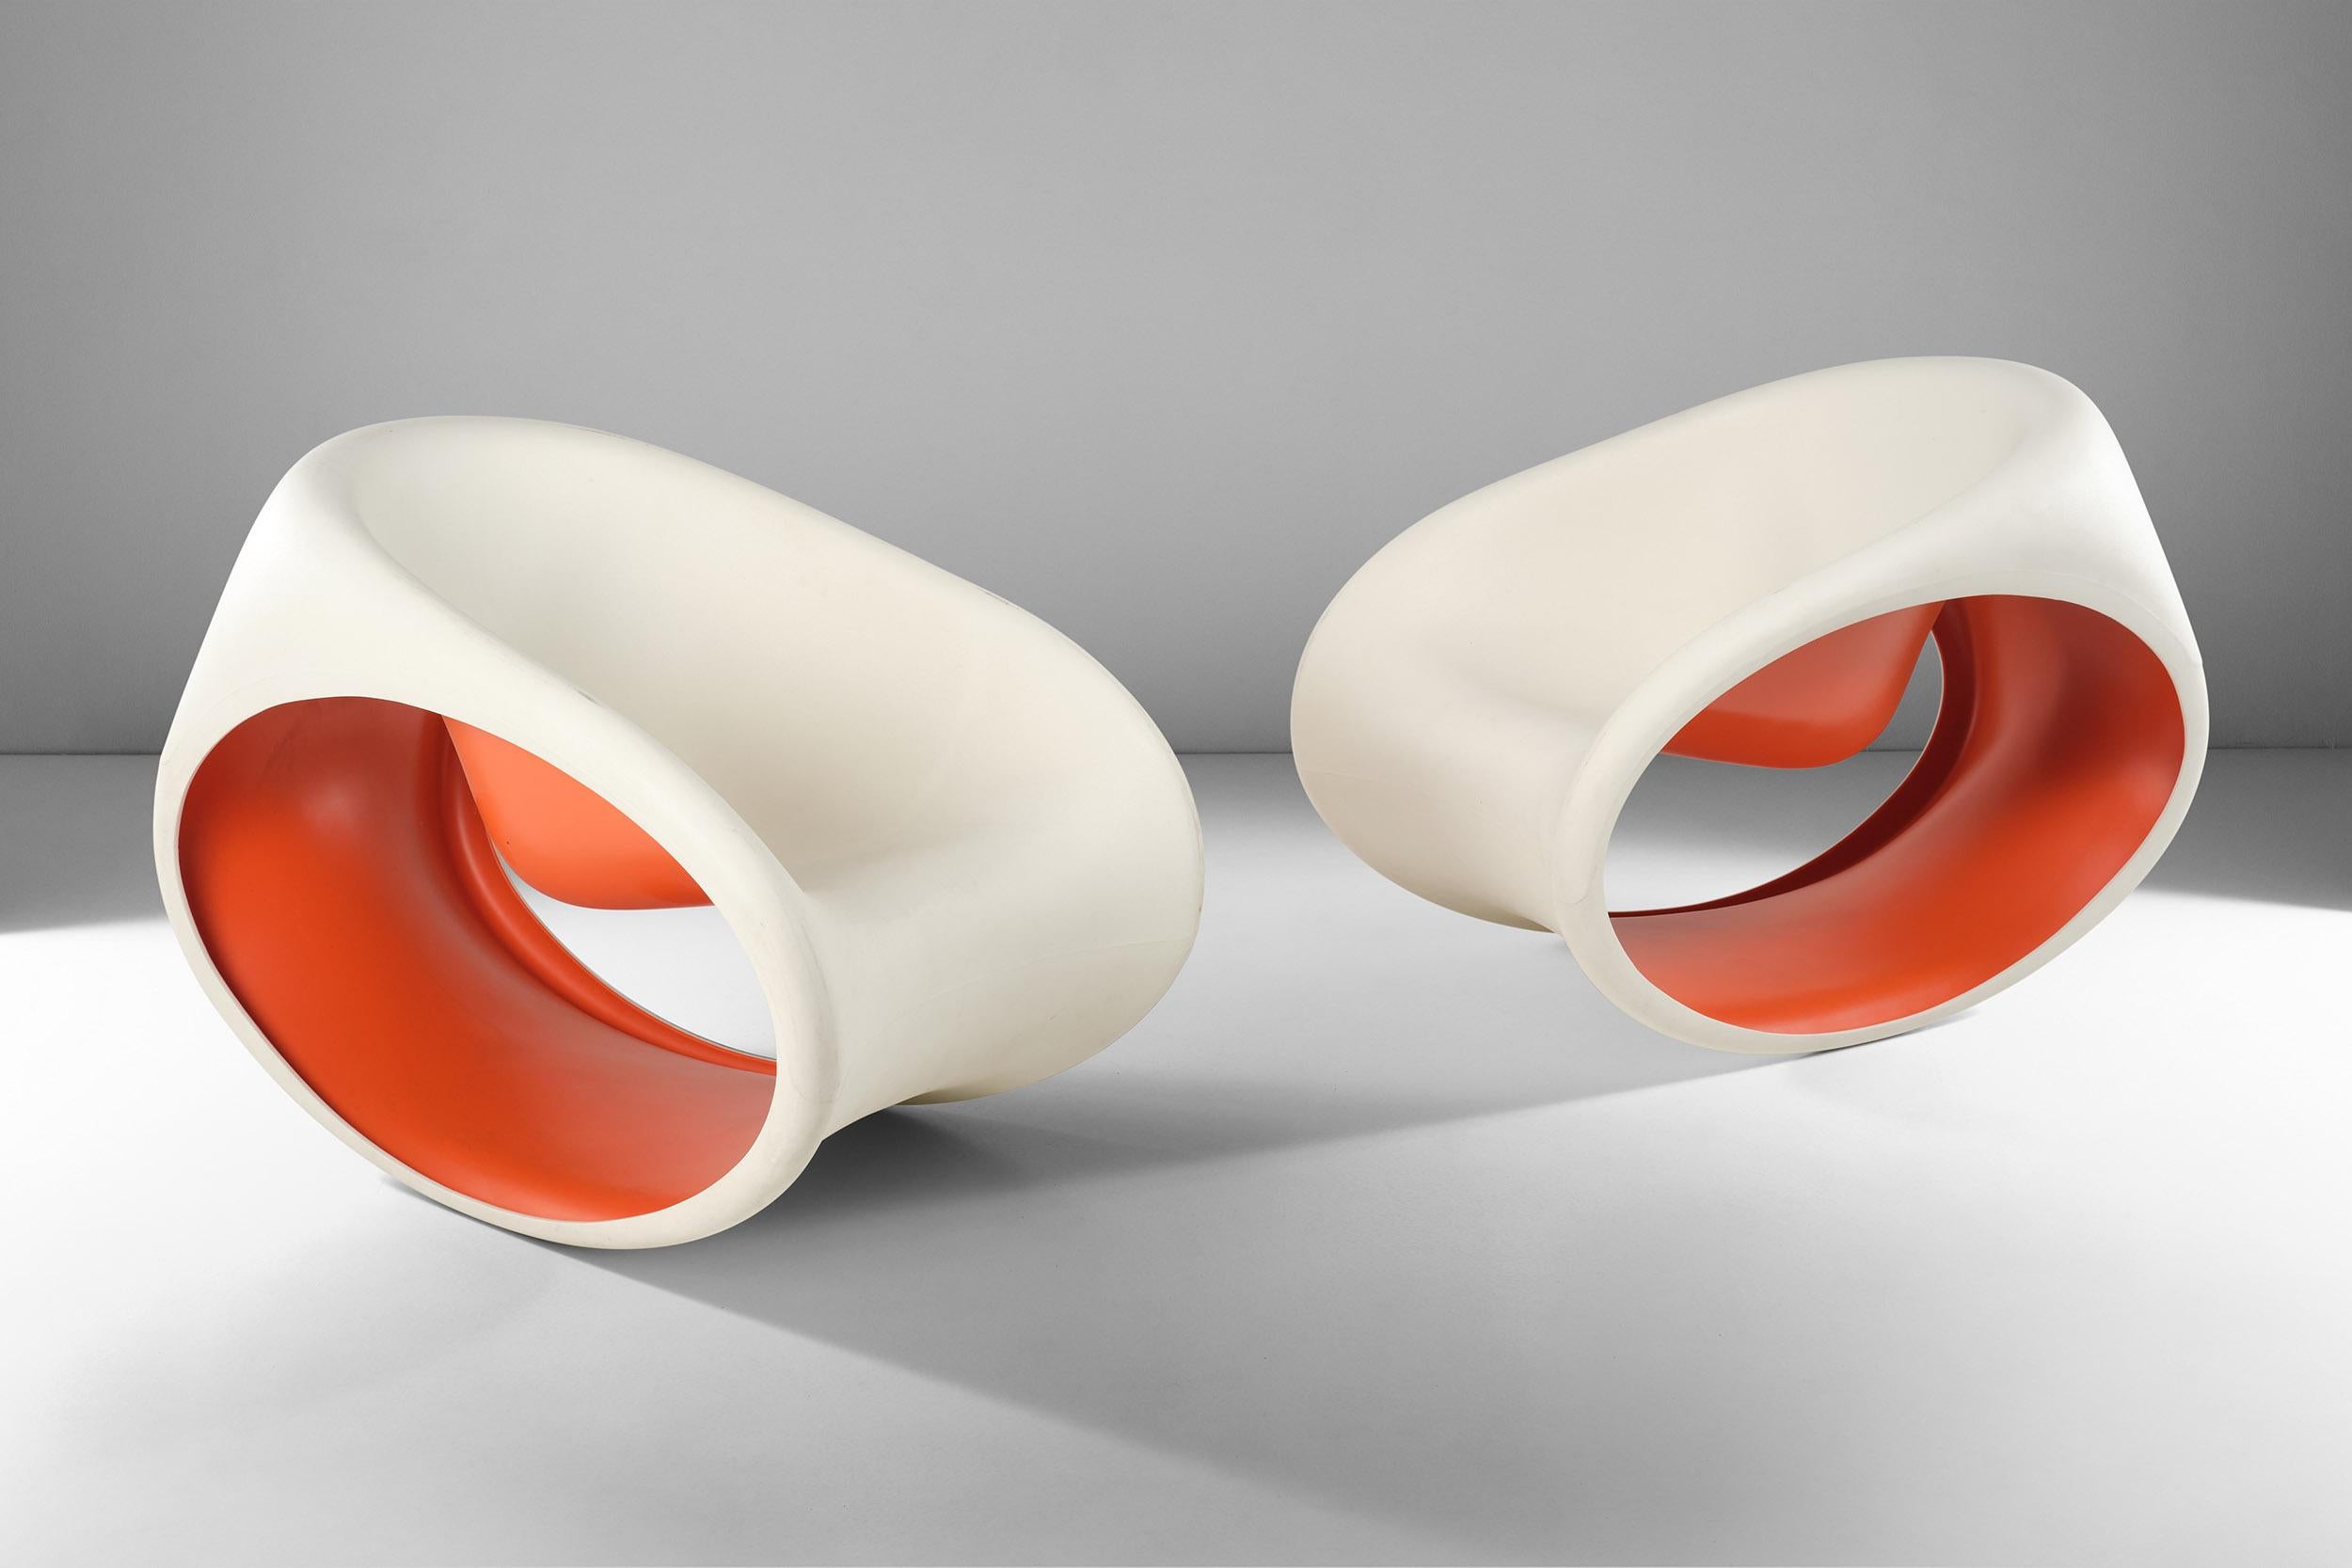 Ces chaises à bascule MT3 ont été conçues par Ron Arad pour Driade et sont fabriquées en polyéthylène monobloc moulé par rotation, de couleur blanc sable à l'extérieur et rouge à l'intérieur. 
Caractérisée par sa forme lisse et son design épuré, sa